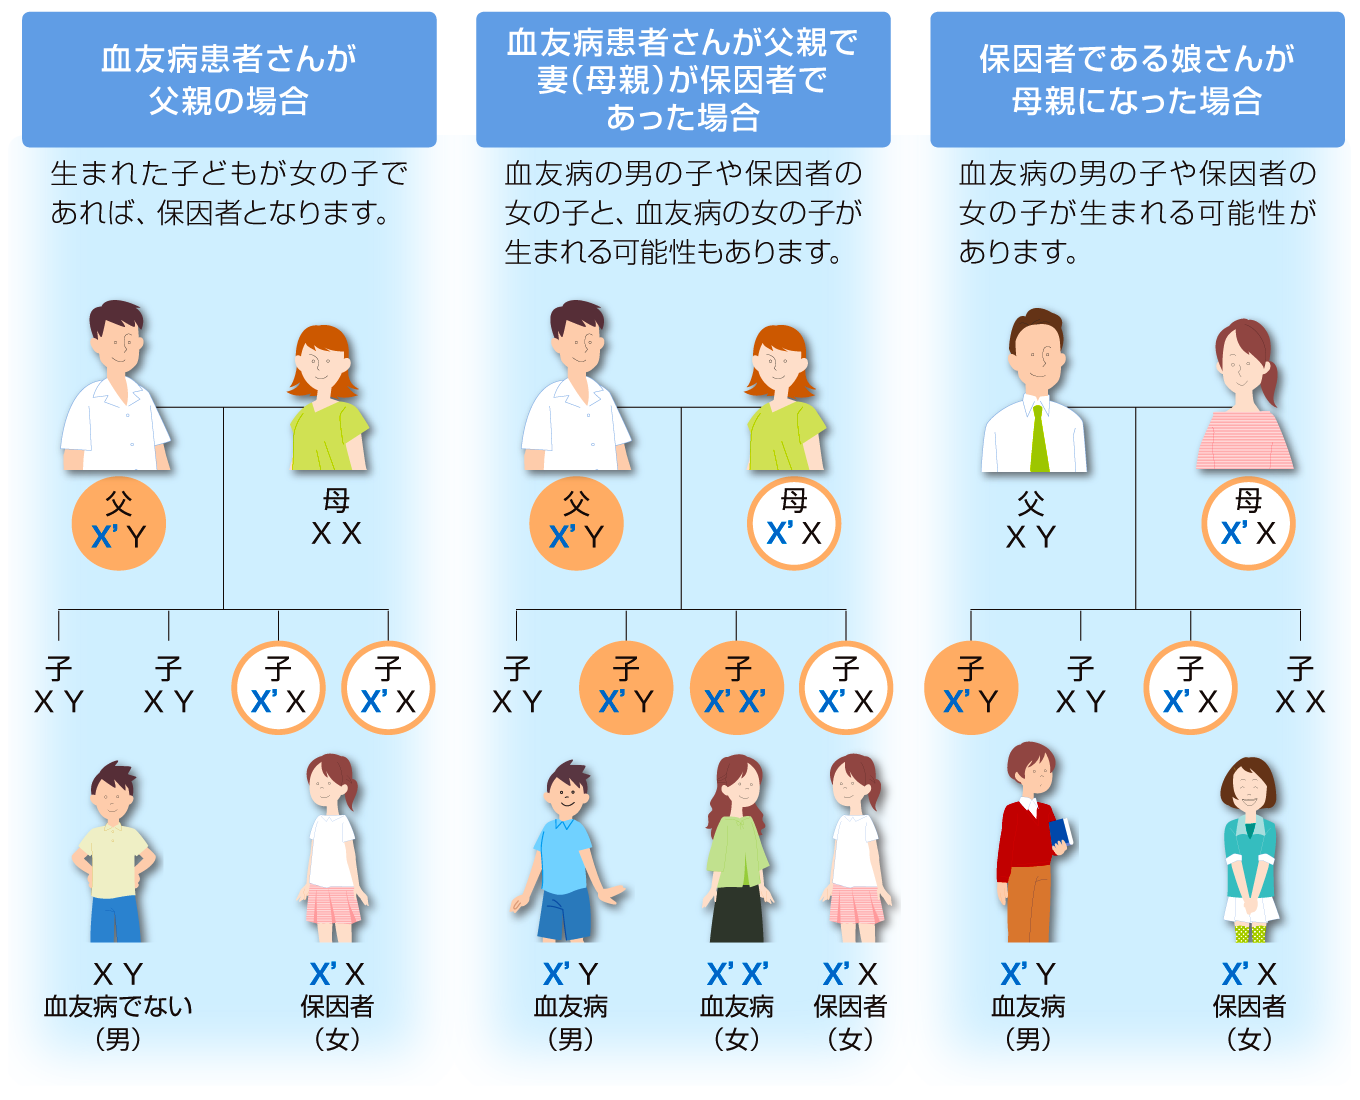 血友病の遺伝に関する親子関係の系図